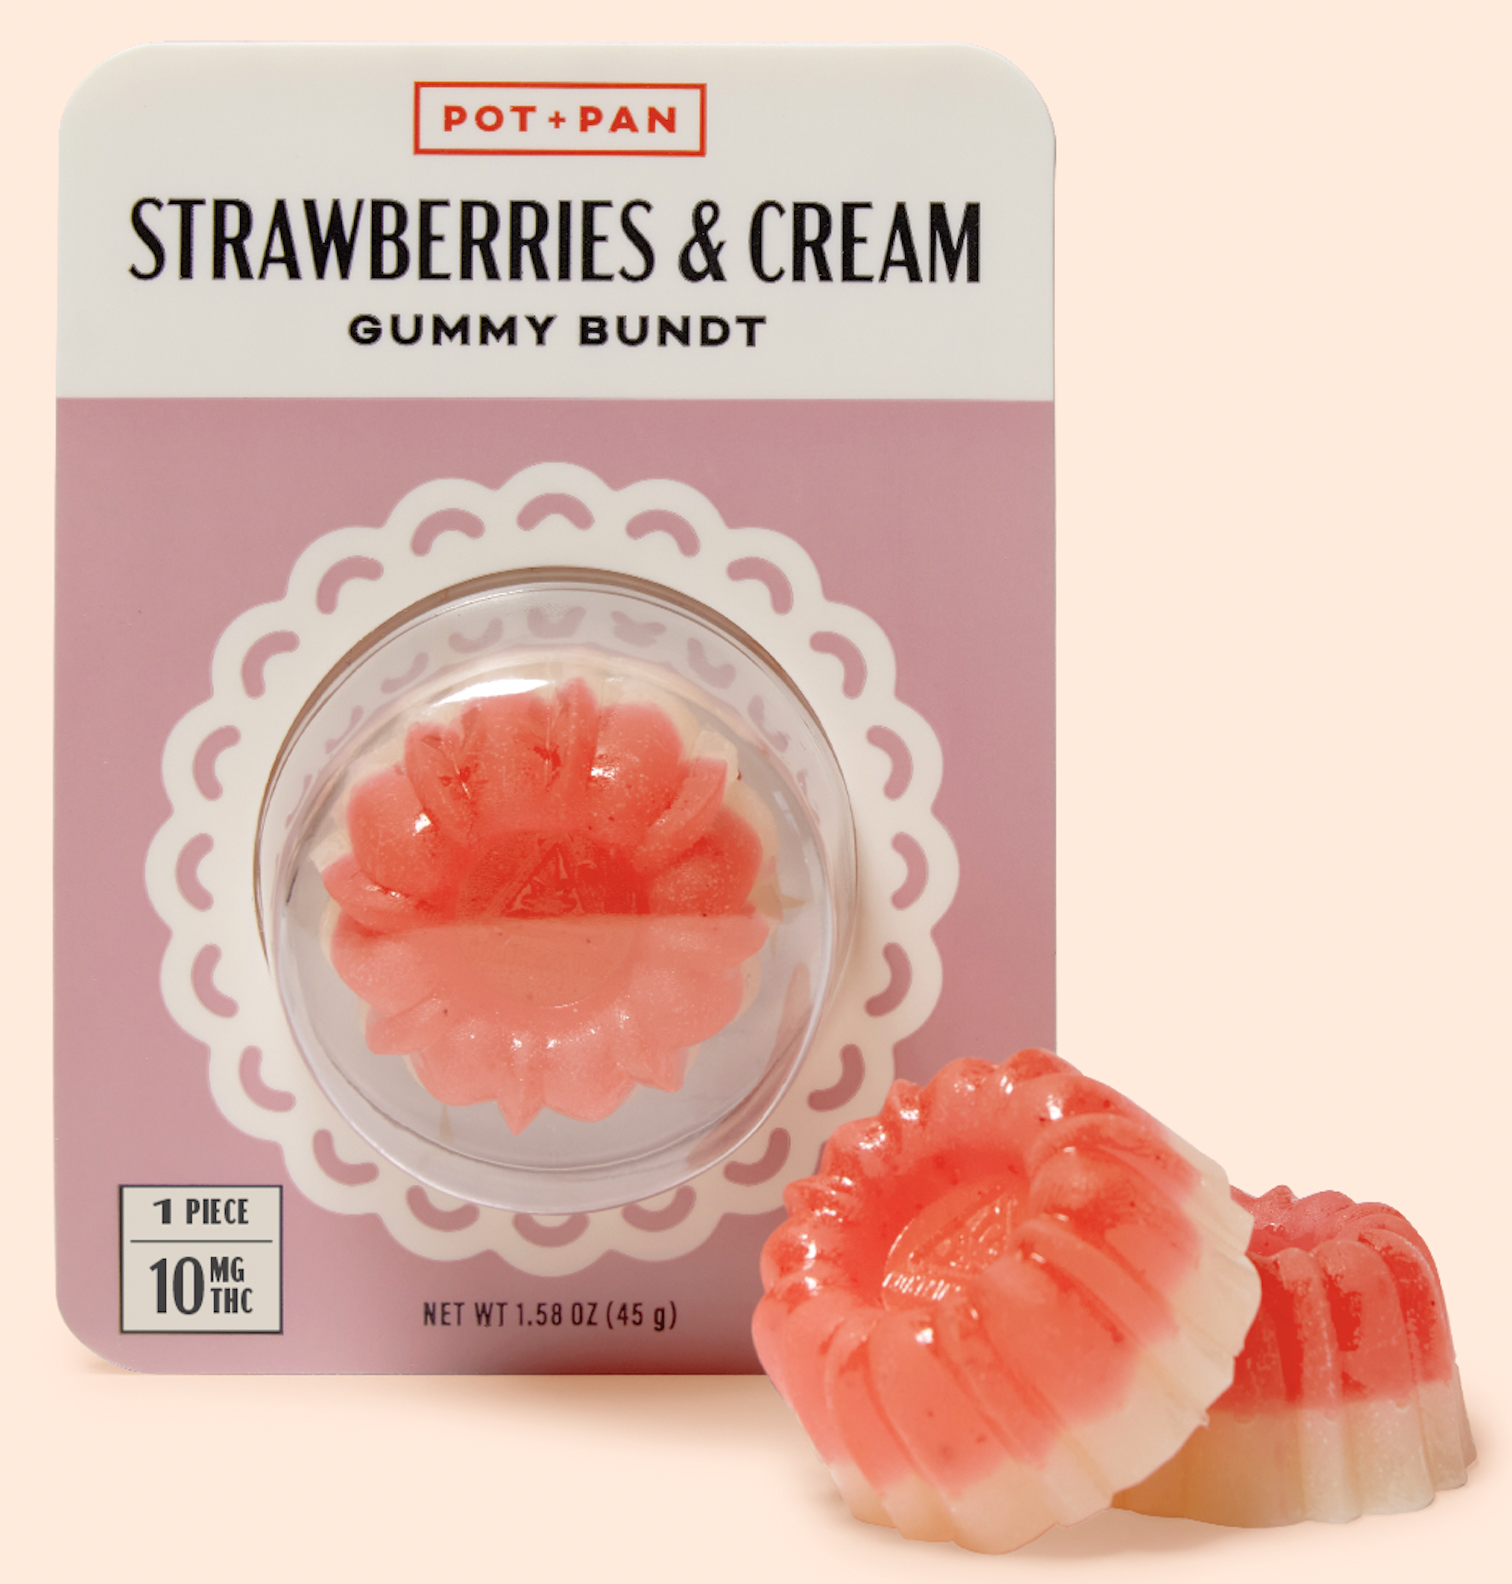 Pot + Pan Strawberries & Cream Bundt Gummy